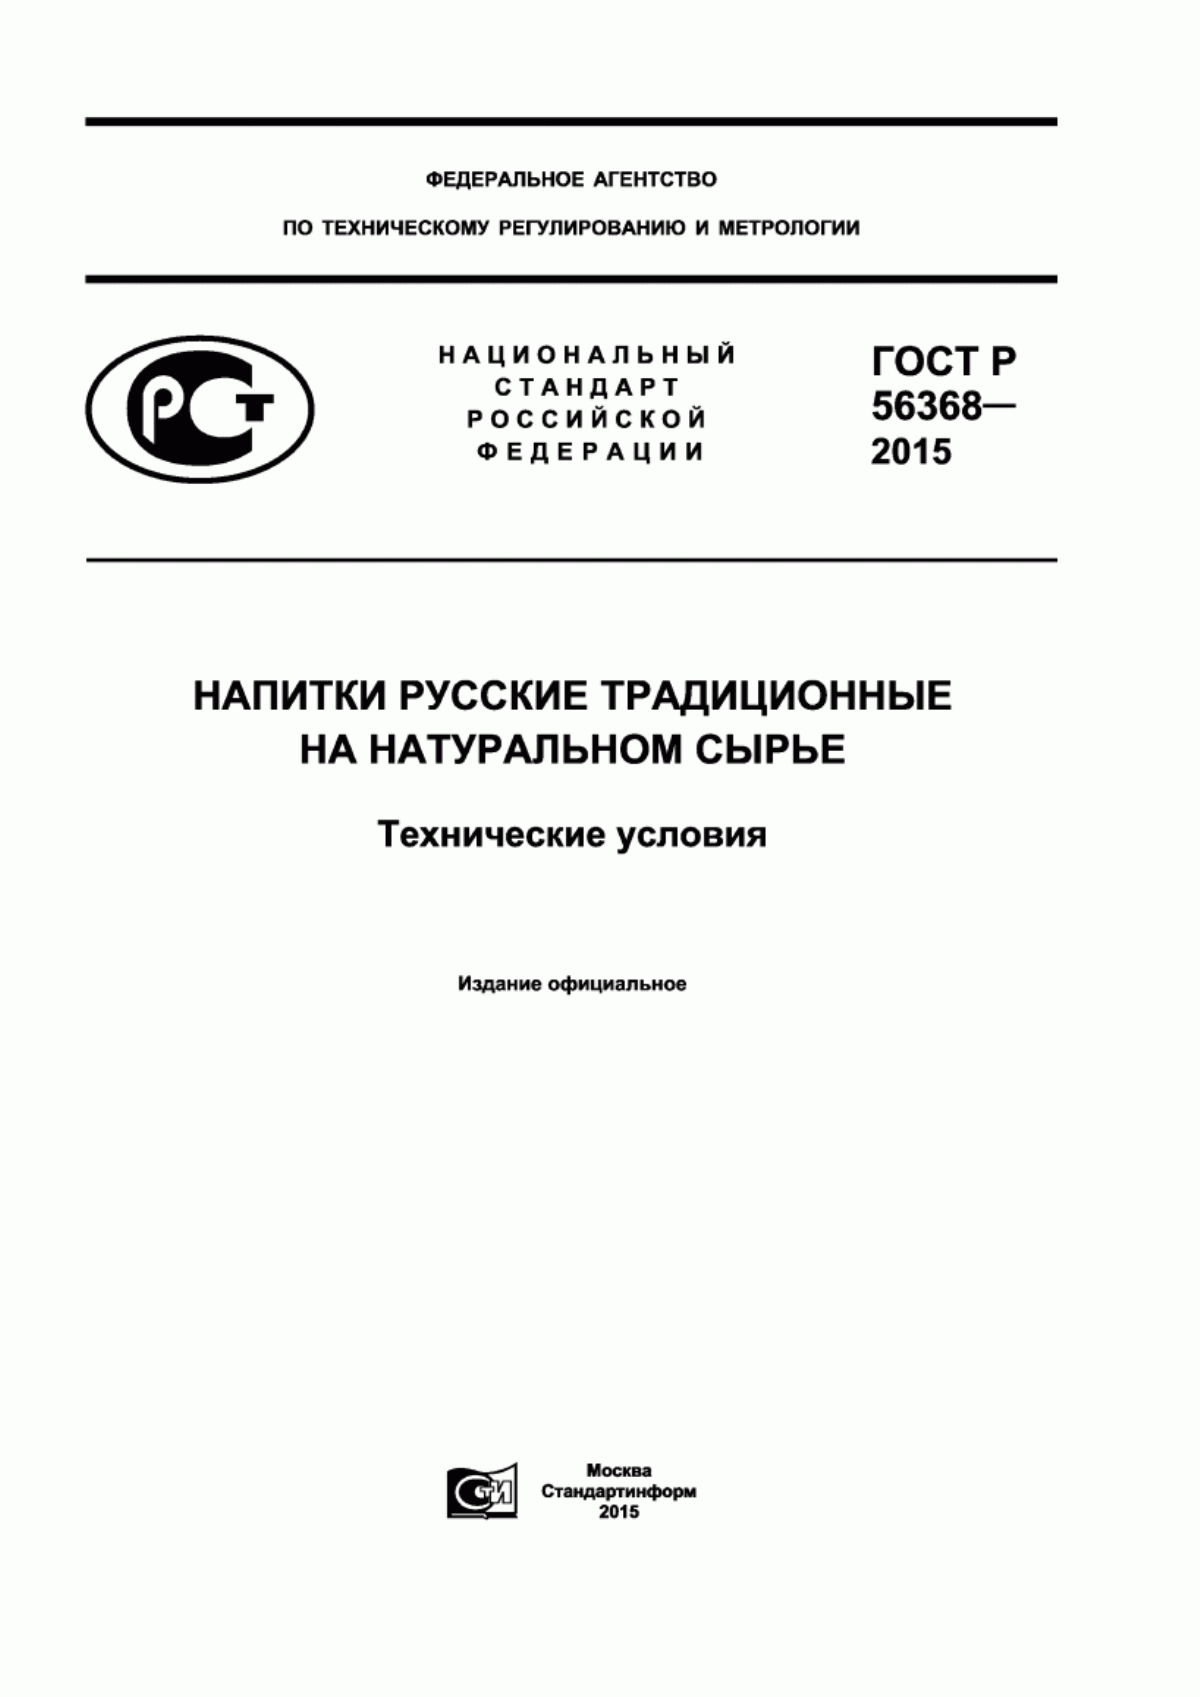 ГОСТ Р 56368-2015 Напитки русские традиционные на натуральном сырье. Технические условия